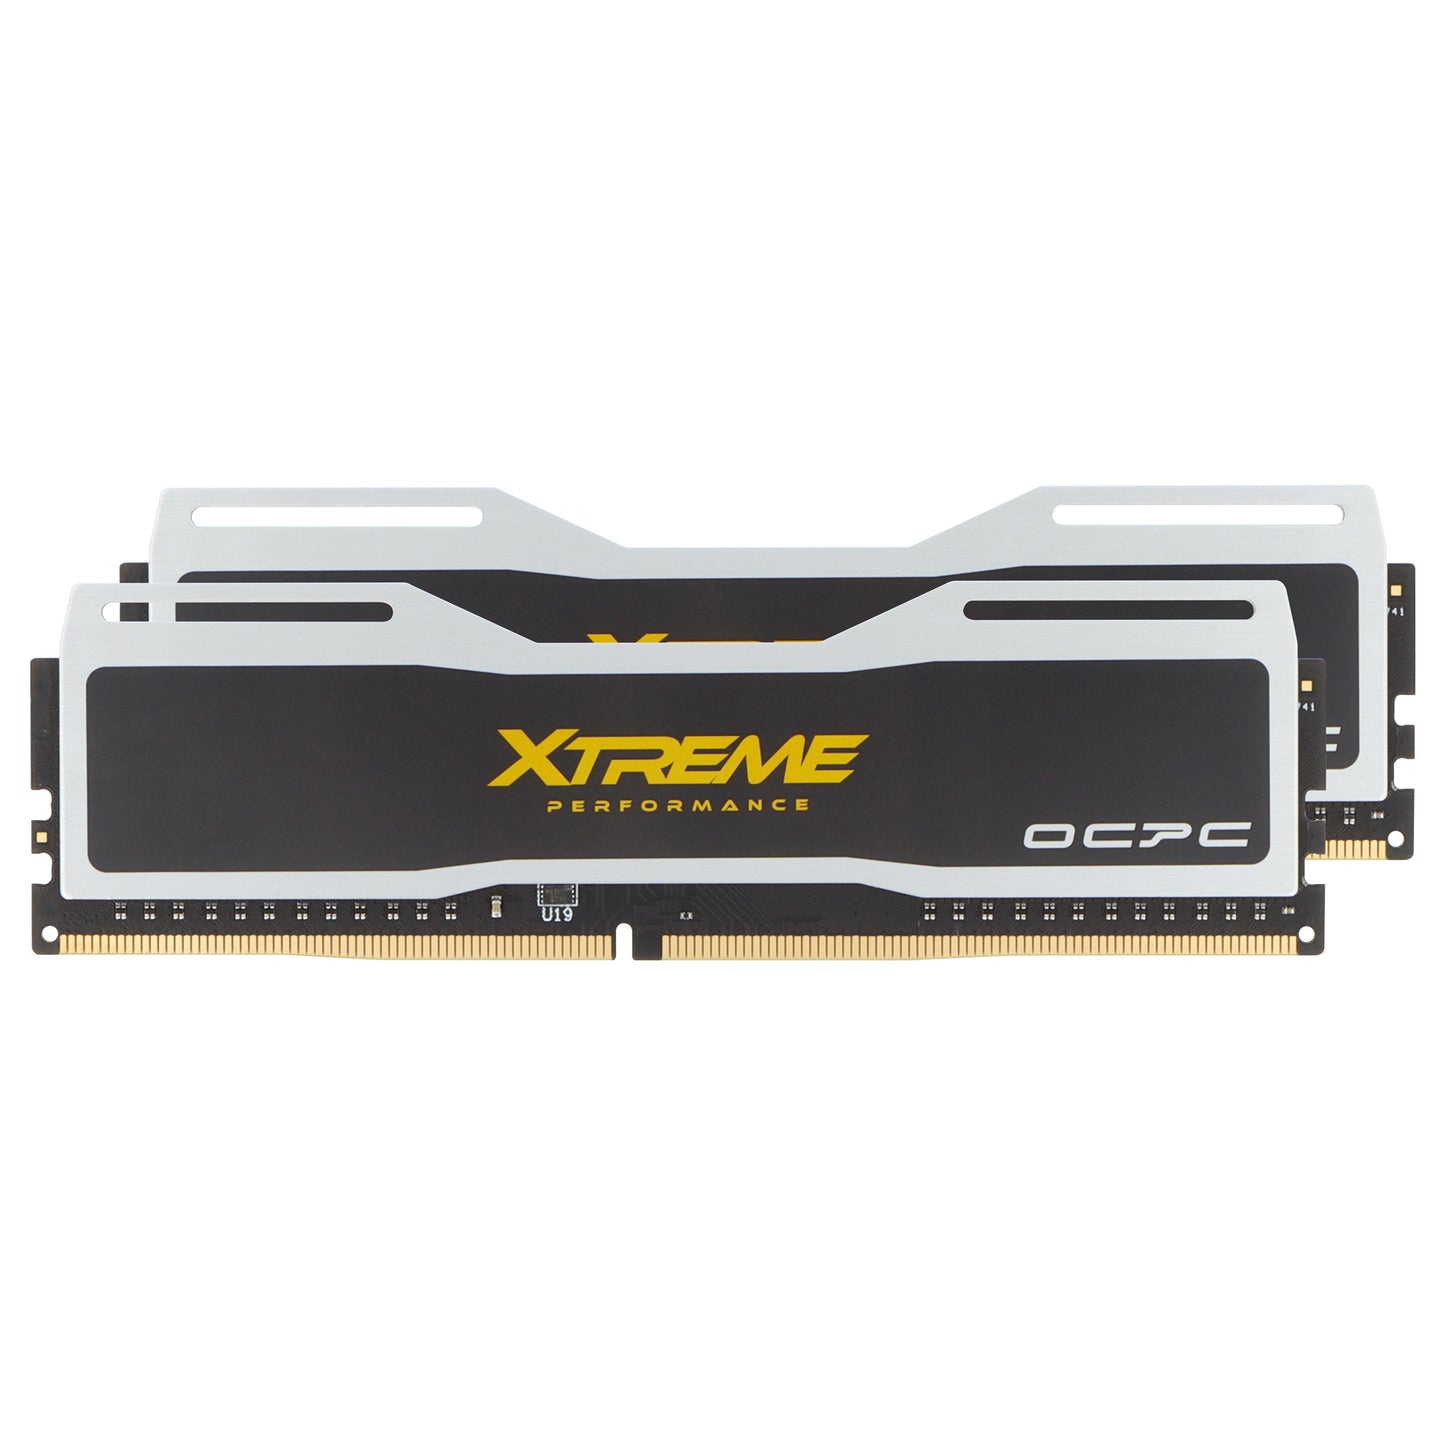 OCPC Xtreme DDR4 - 2666MHz - CL19 - DIMM - Desktop